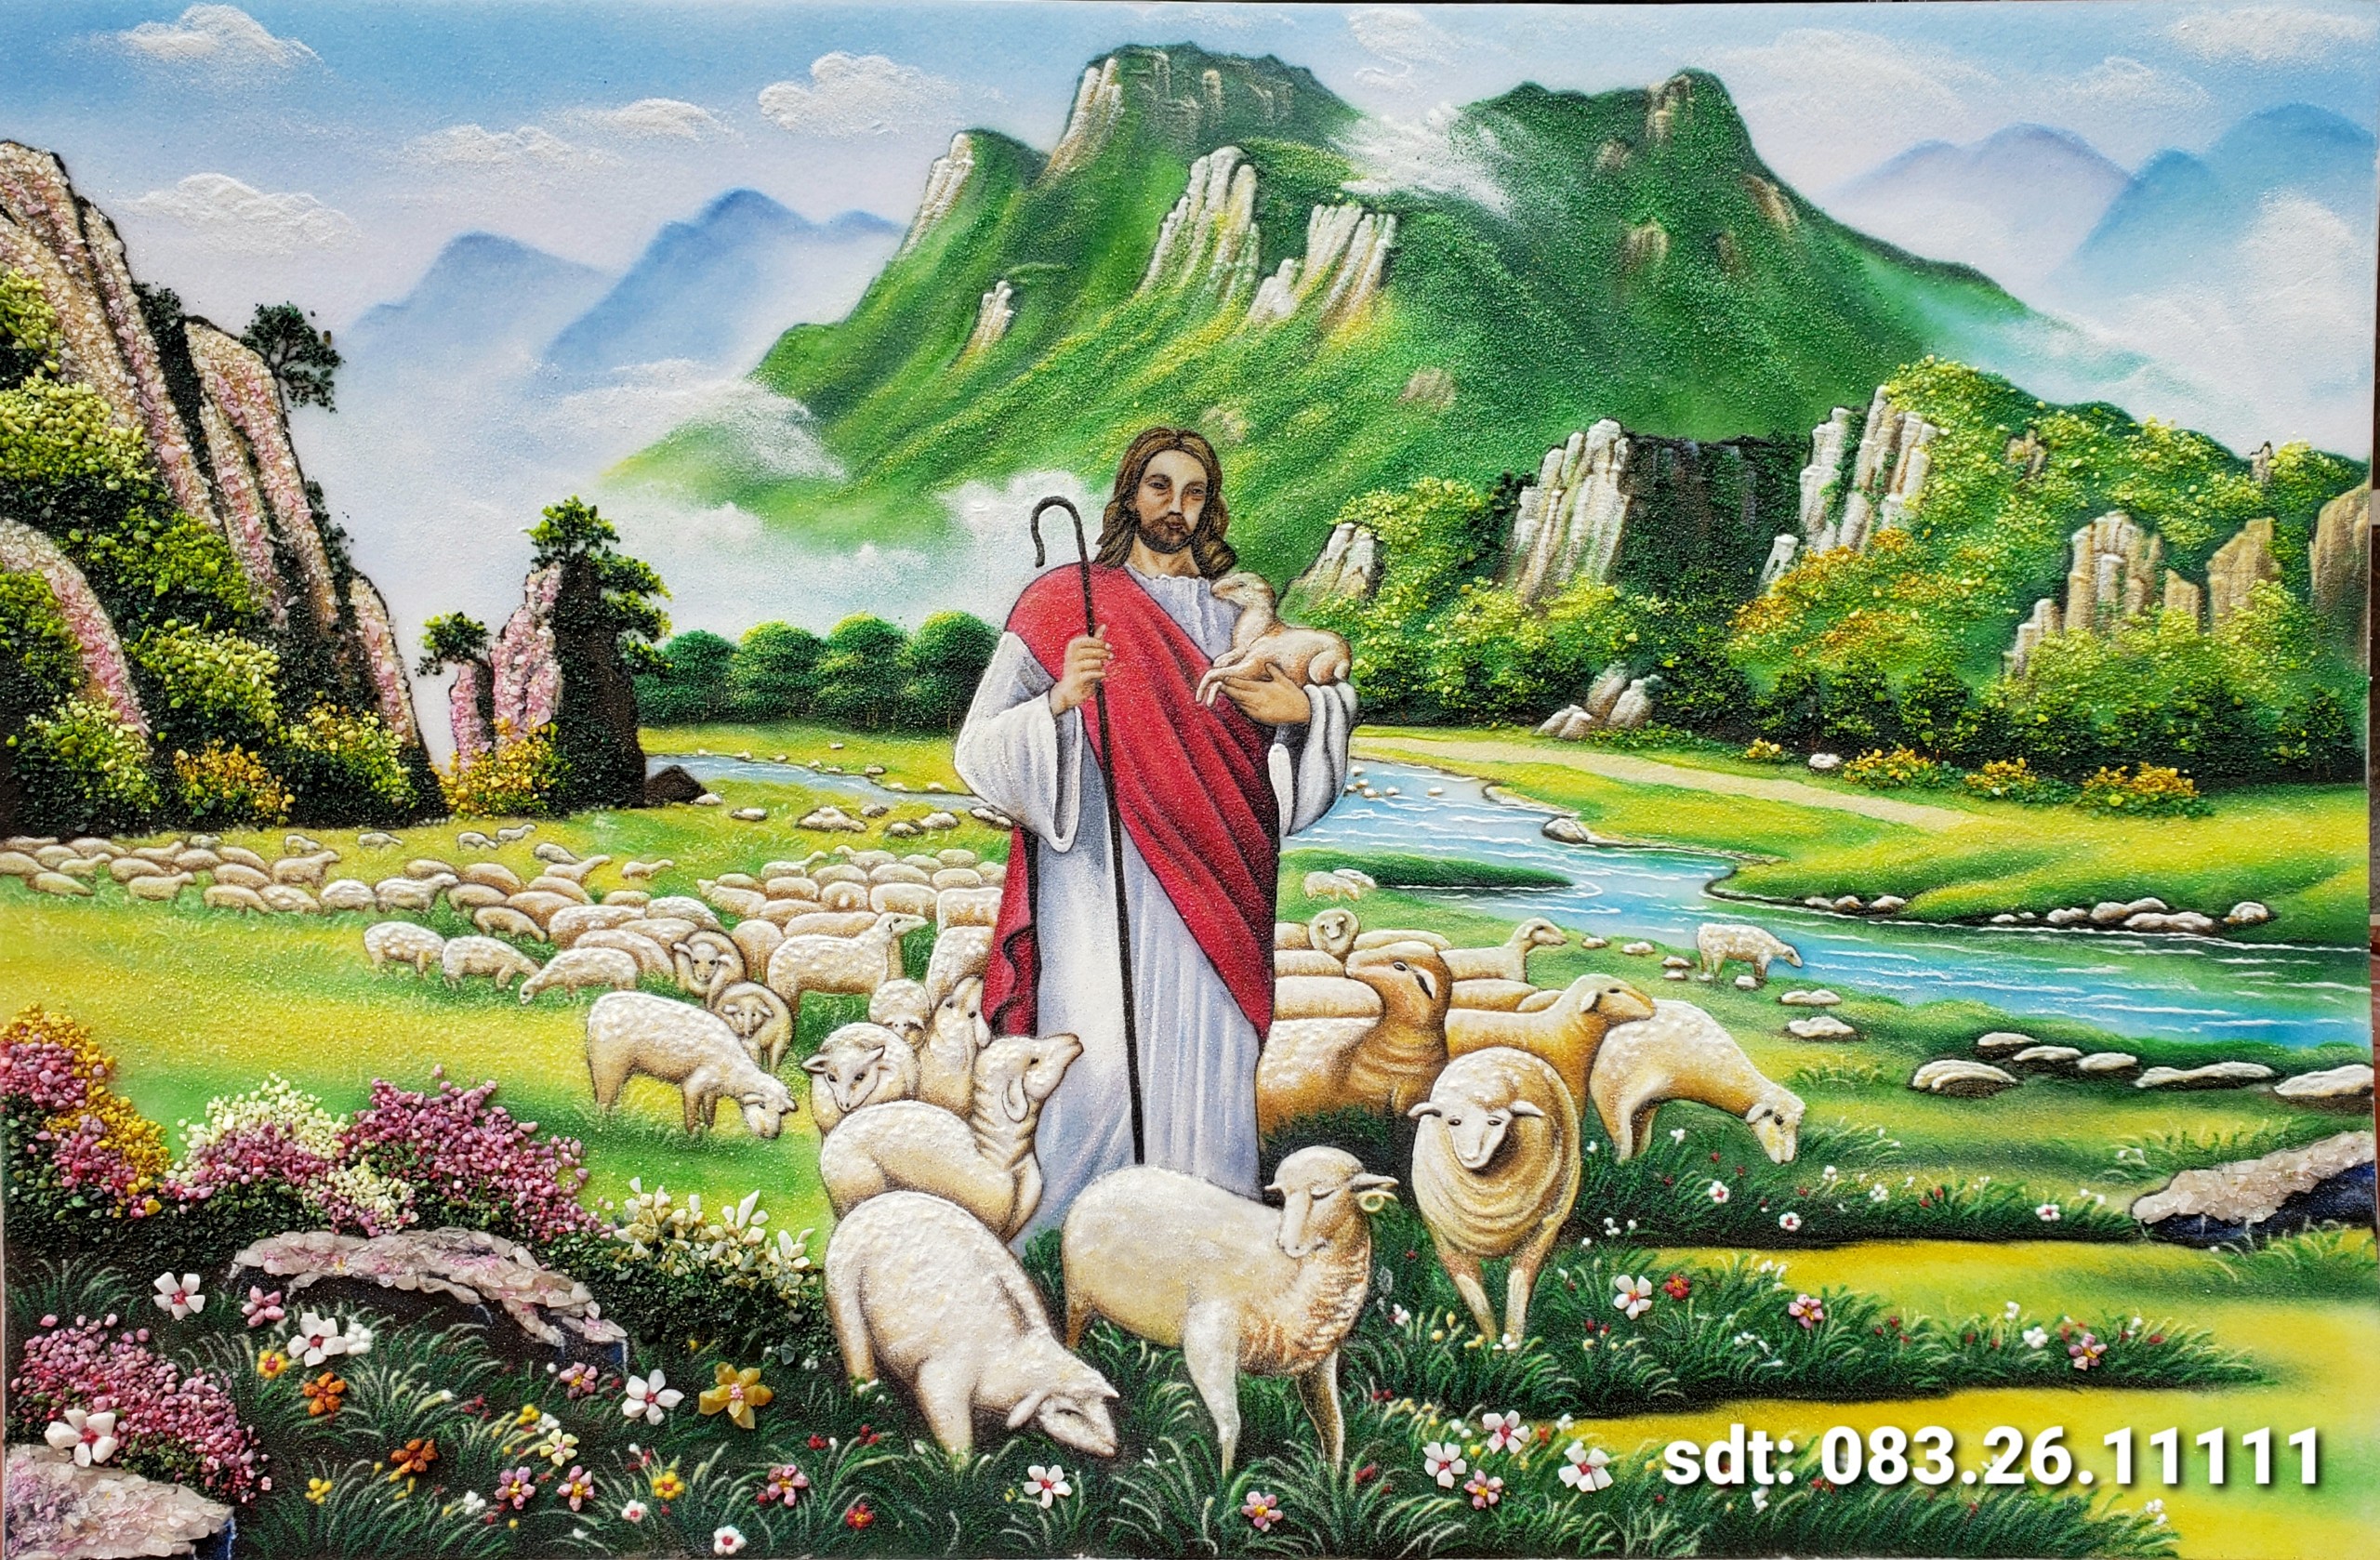 Chúa chăn đàn cừu - Tranh Đá Quý Phong Thủy 24h - Công Ty TNHH Tranh Đá Quý Phong Thủy 24h